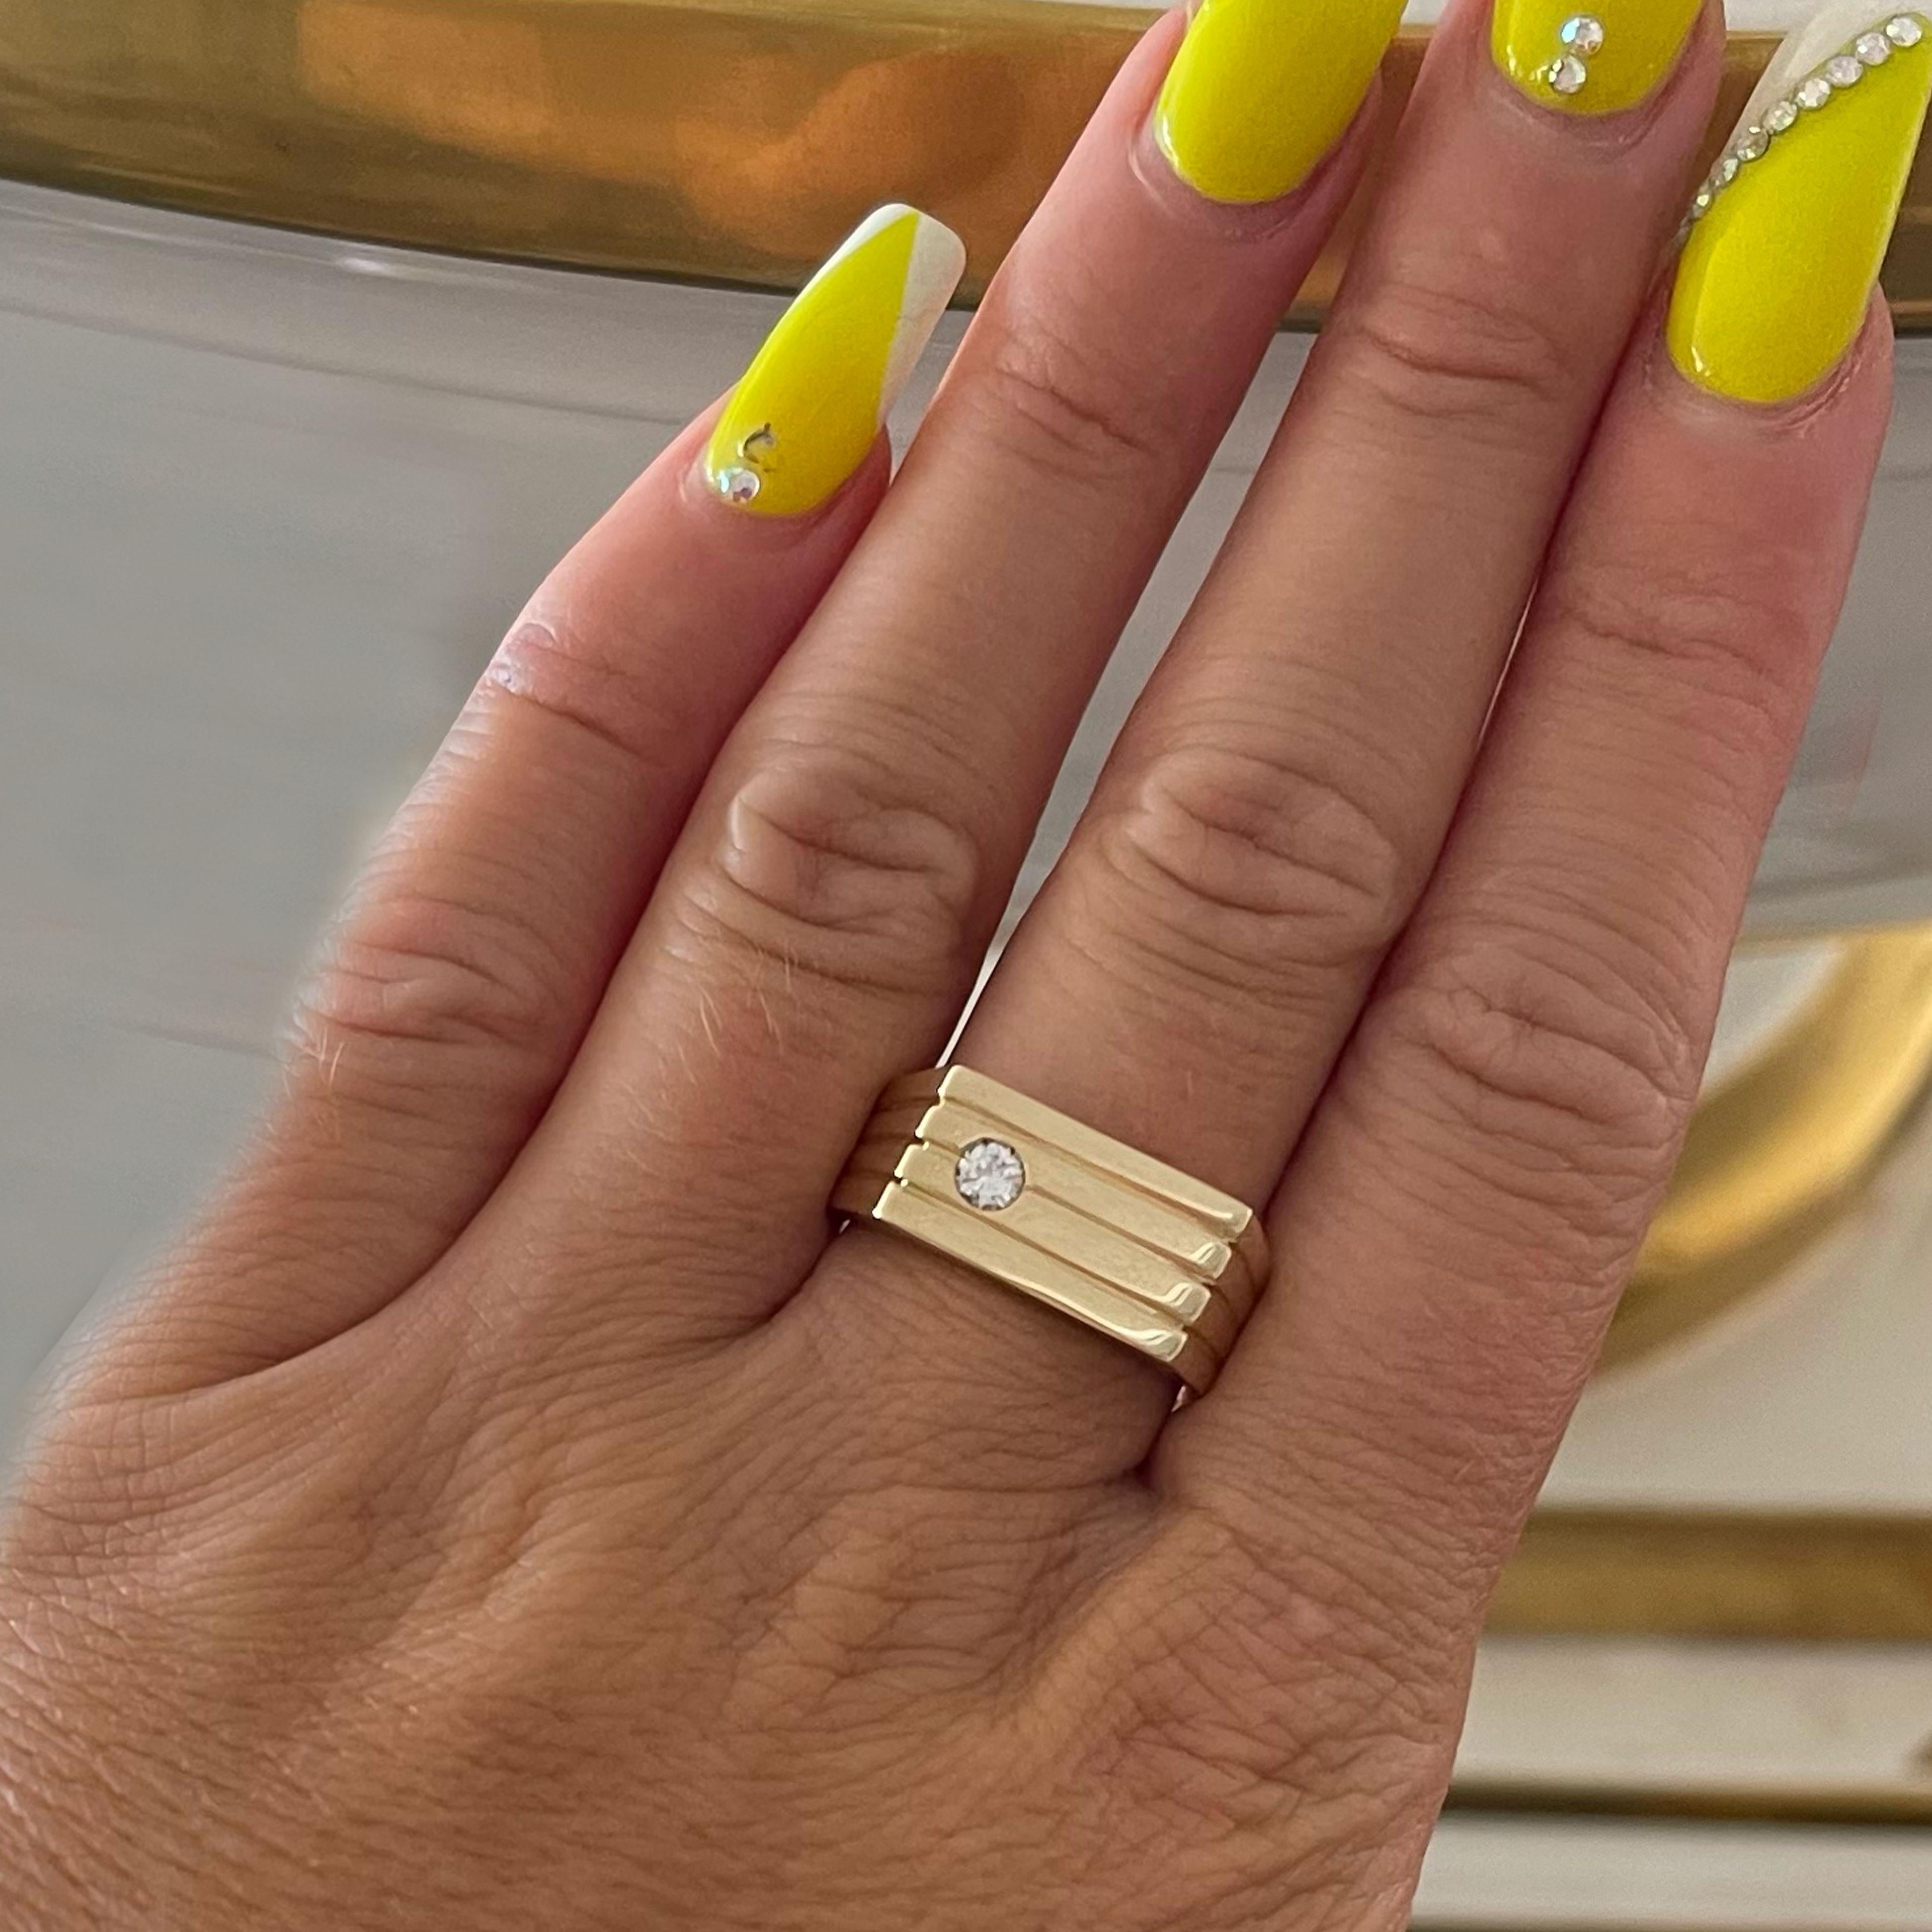 Diamantring für den kleinen Finger aus 14k Gelbgold mit Hochglanzpolitur. Der Diamant ist bündig gefasst und wiegt etwa 0,15 Karat. Der Diamant ist von der Farbe her G-H und von der Reinheit her SI1. Der Ring hat eine Breite von 9 mm und ein